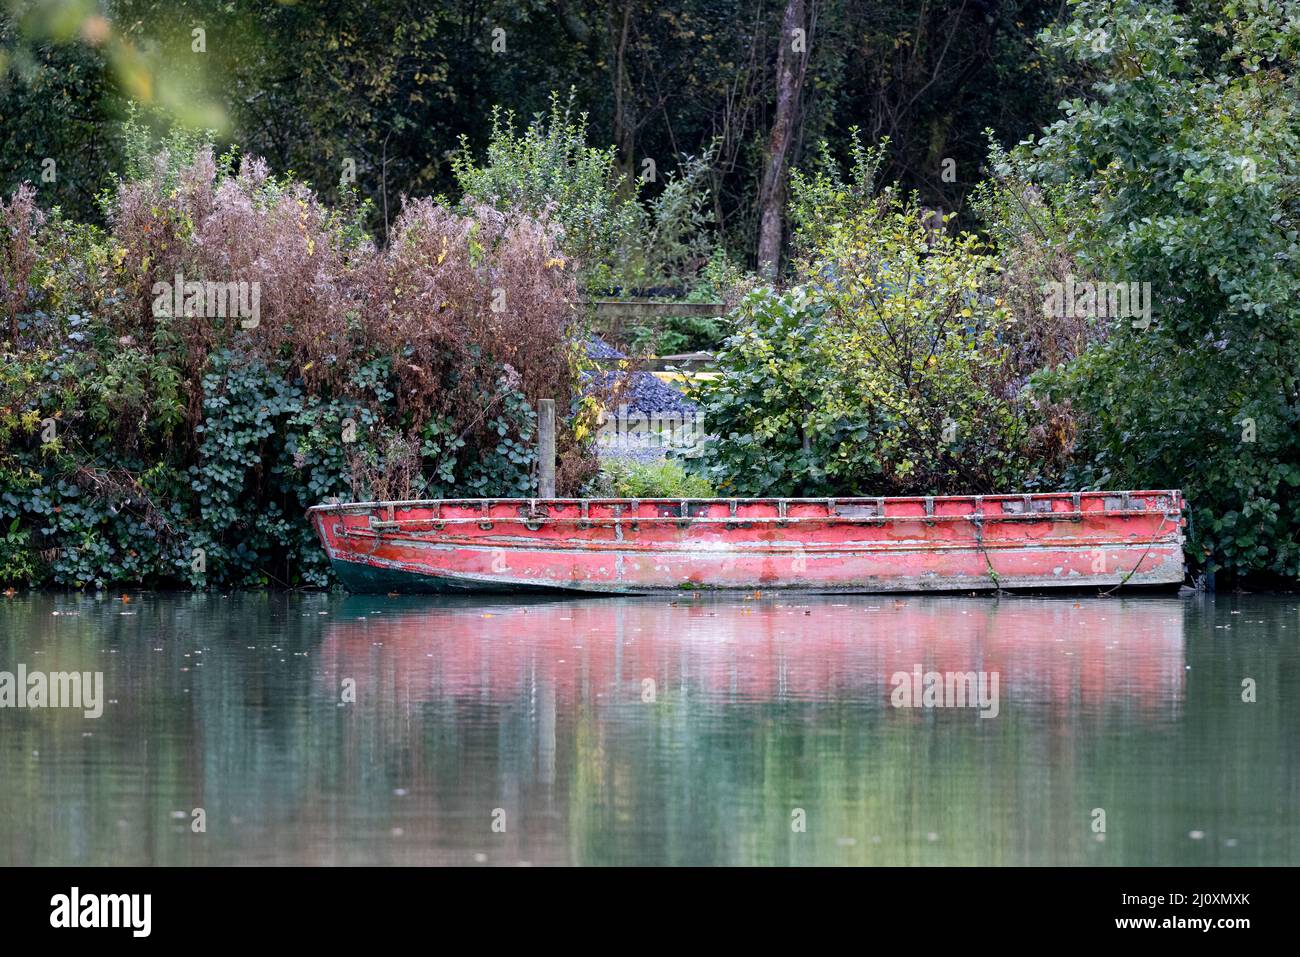 Antiguo barco con pintura roja descolorida en el lago de pesca con reflejo, Somerset, Reino Unido Foto de stock